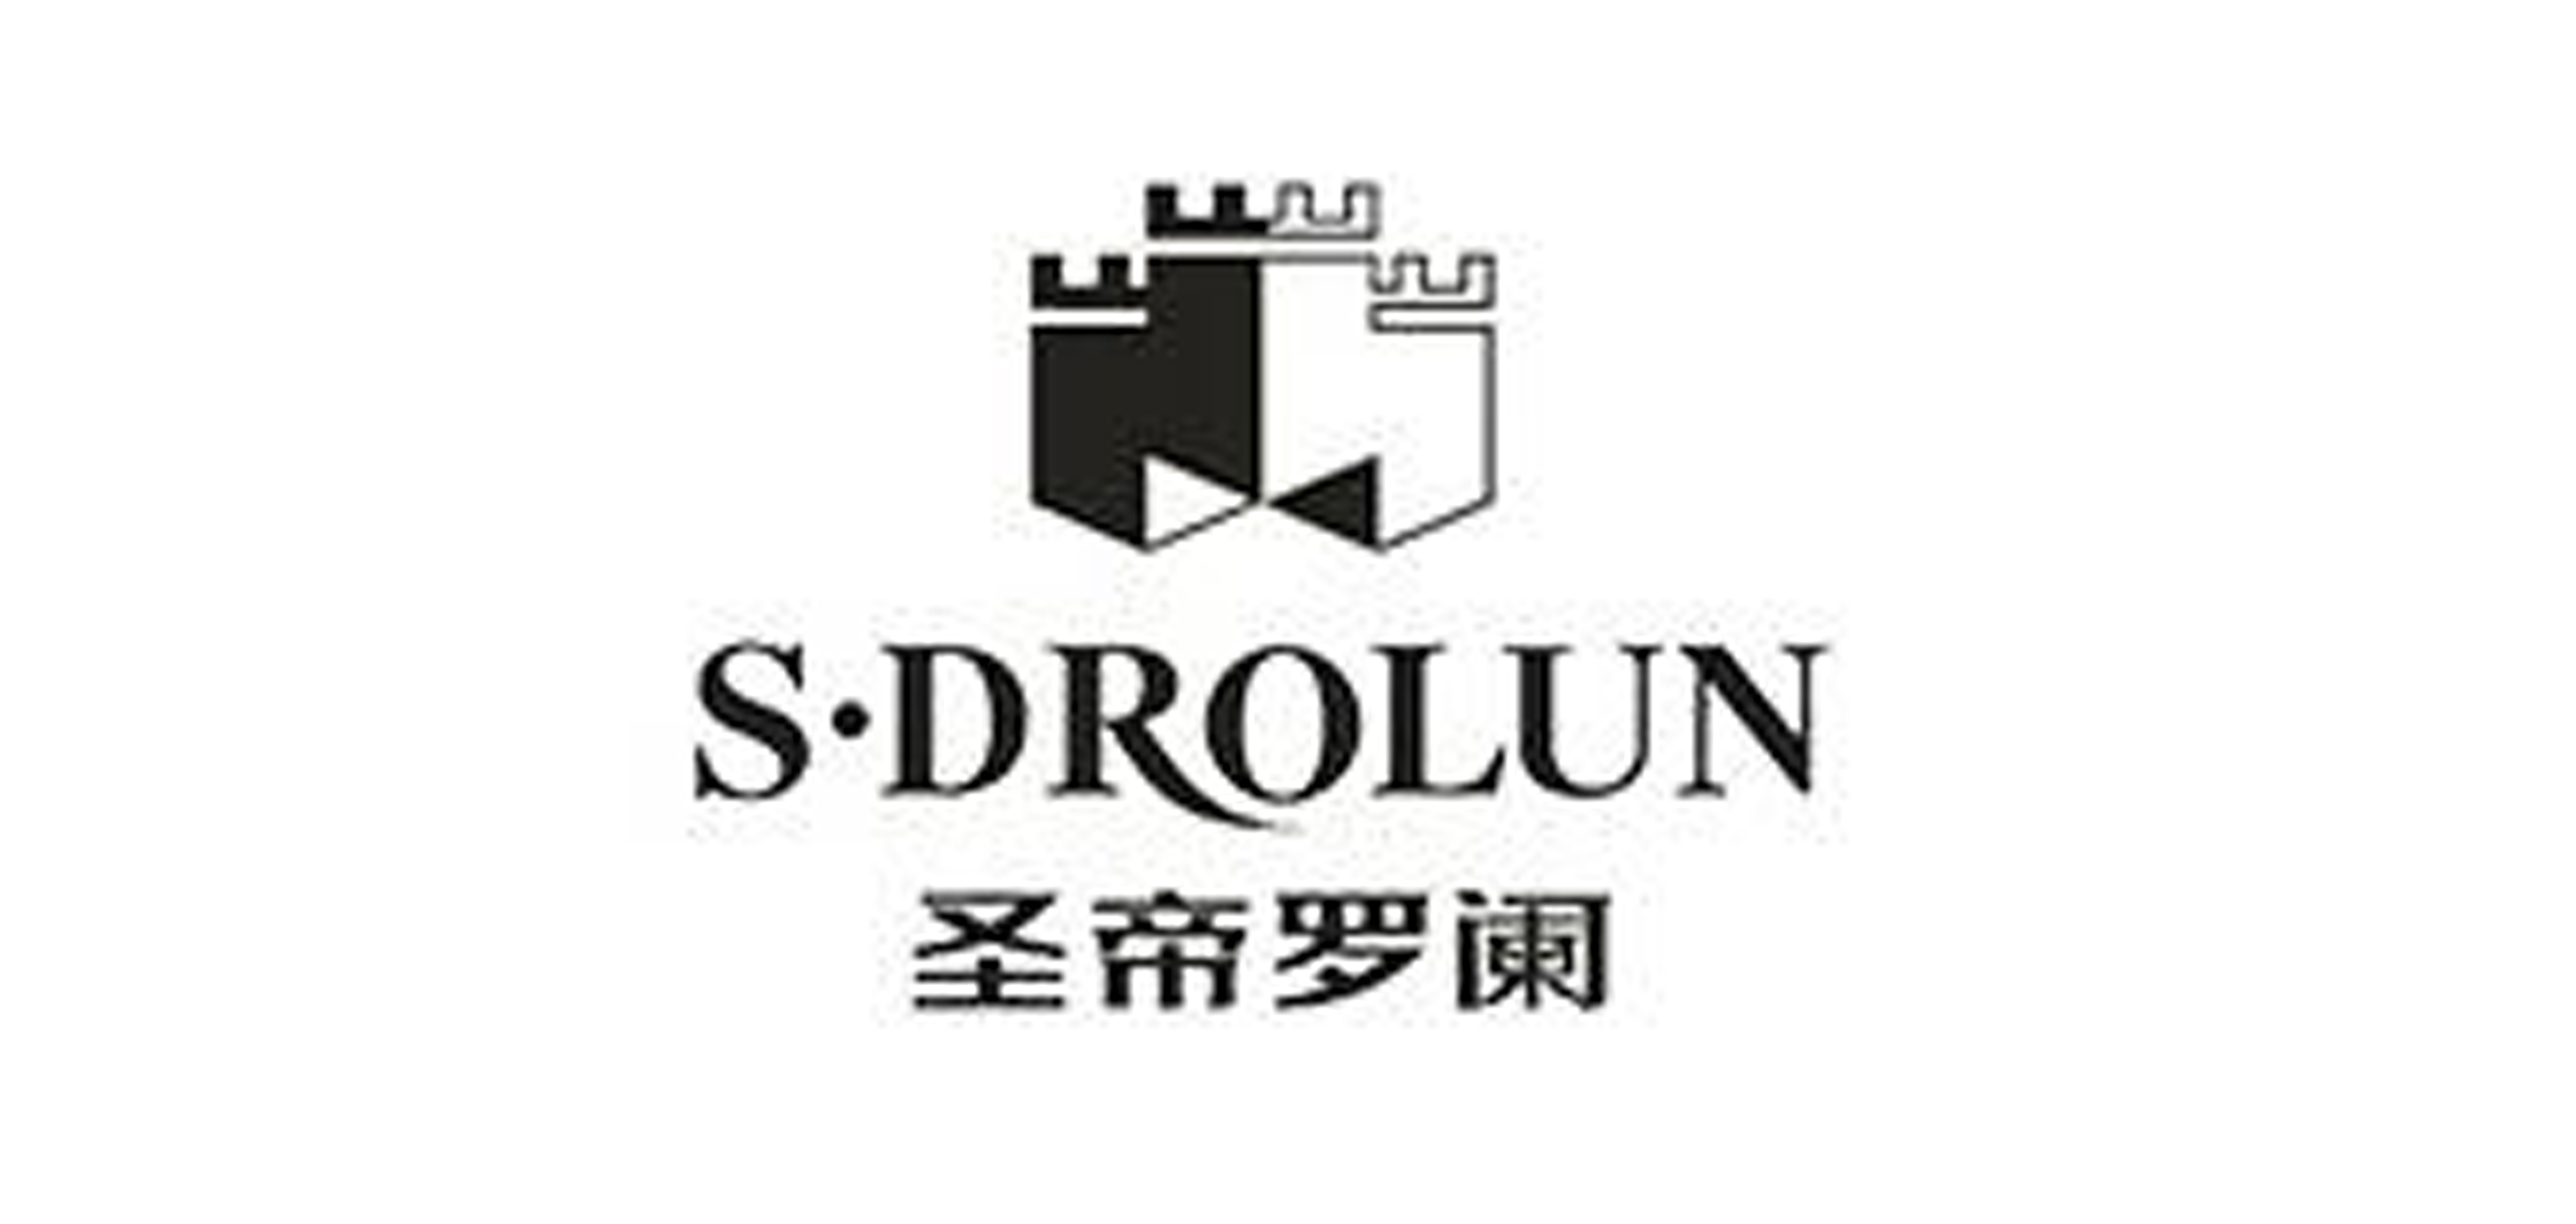 S•DROLUN是什么牌子_圣帝罗阑品牌怎么样?